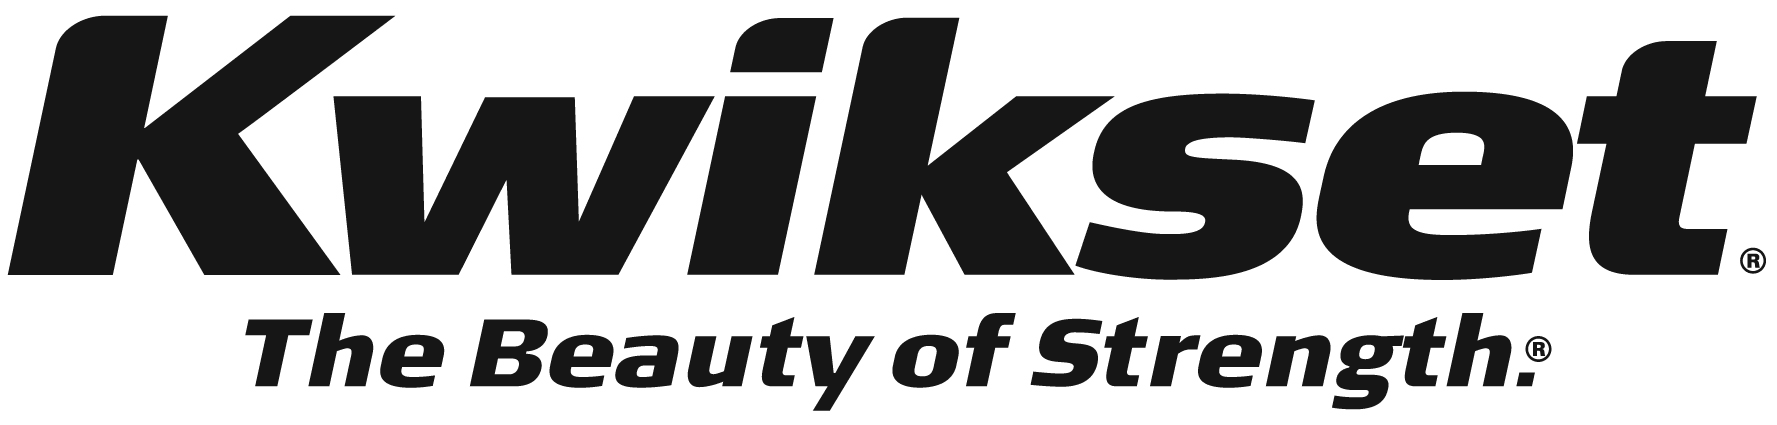 the-kwikset-logo.gif